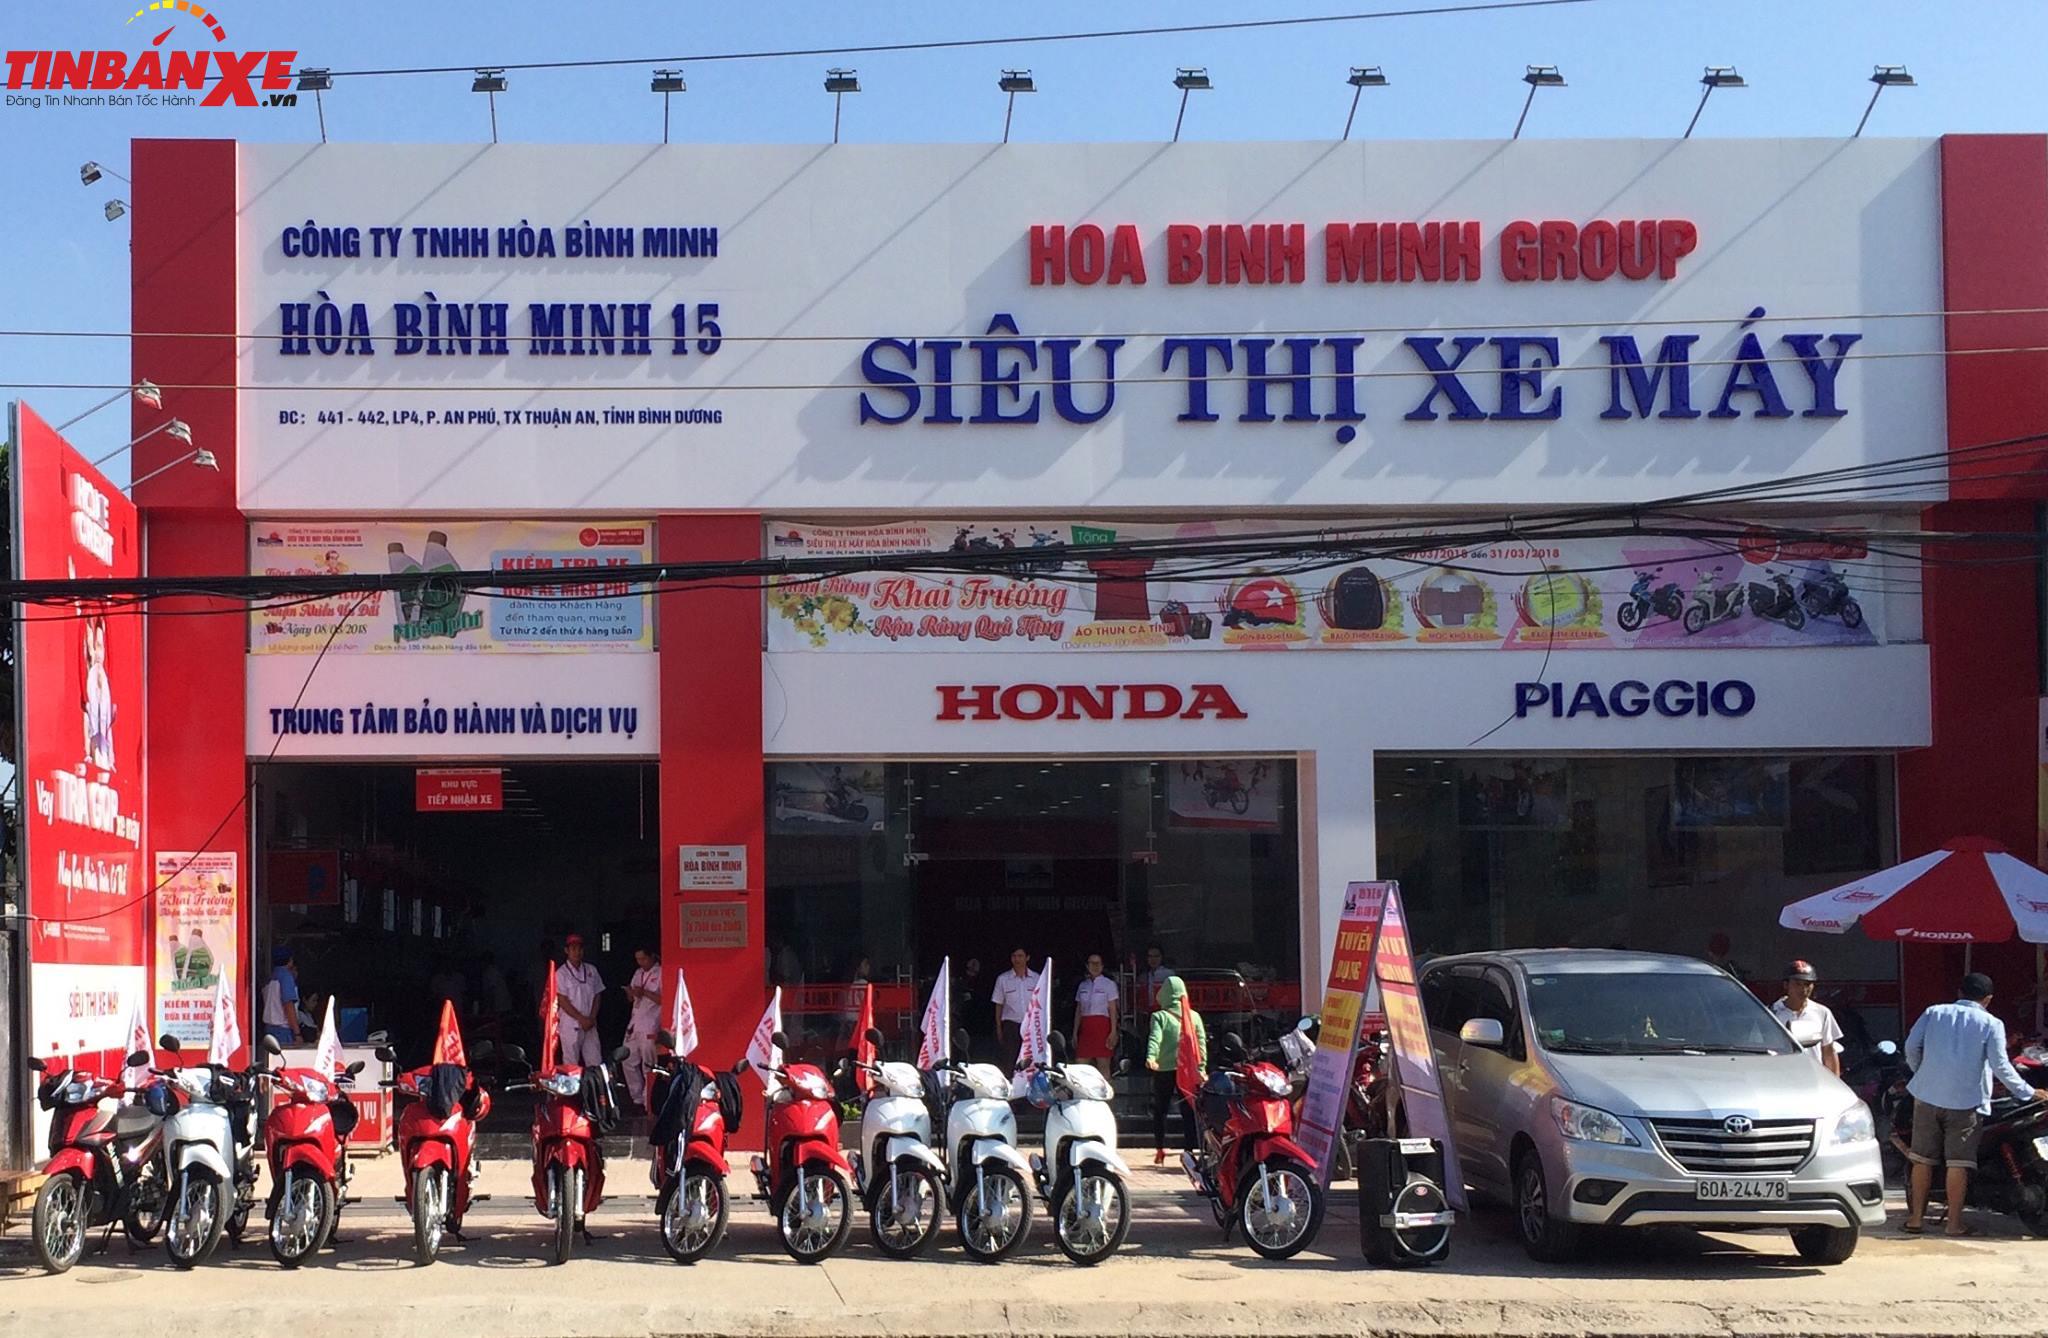 Honda Hòa Bình Minh